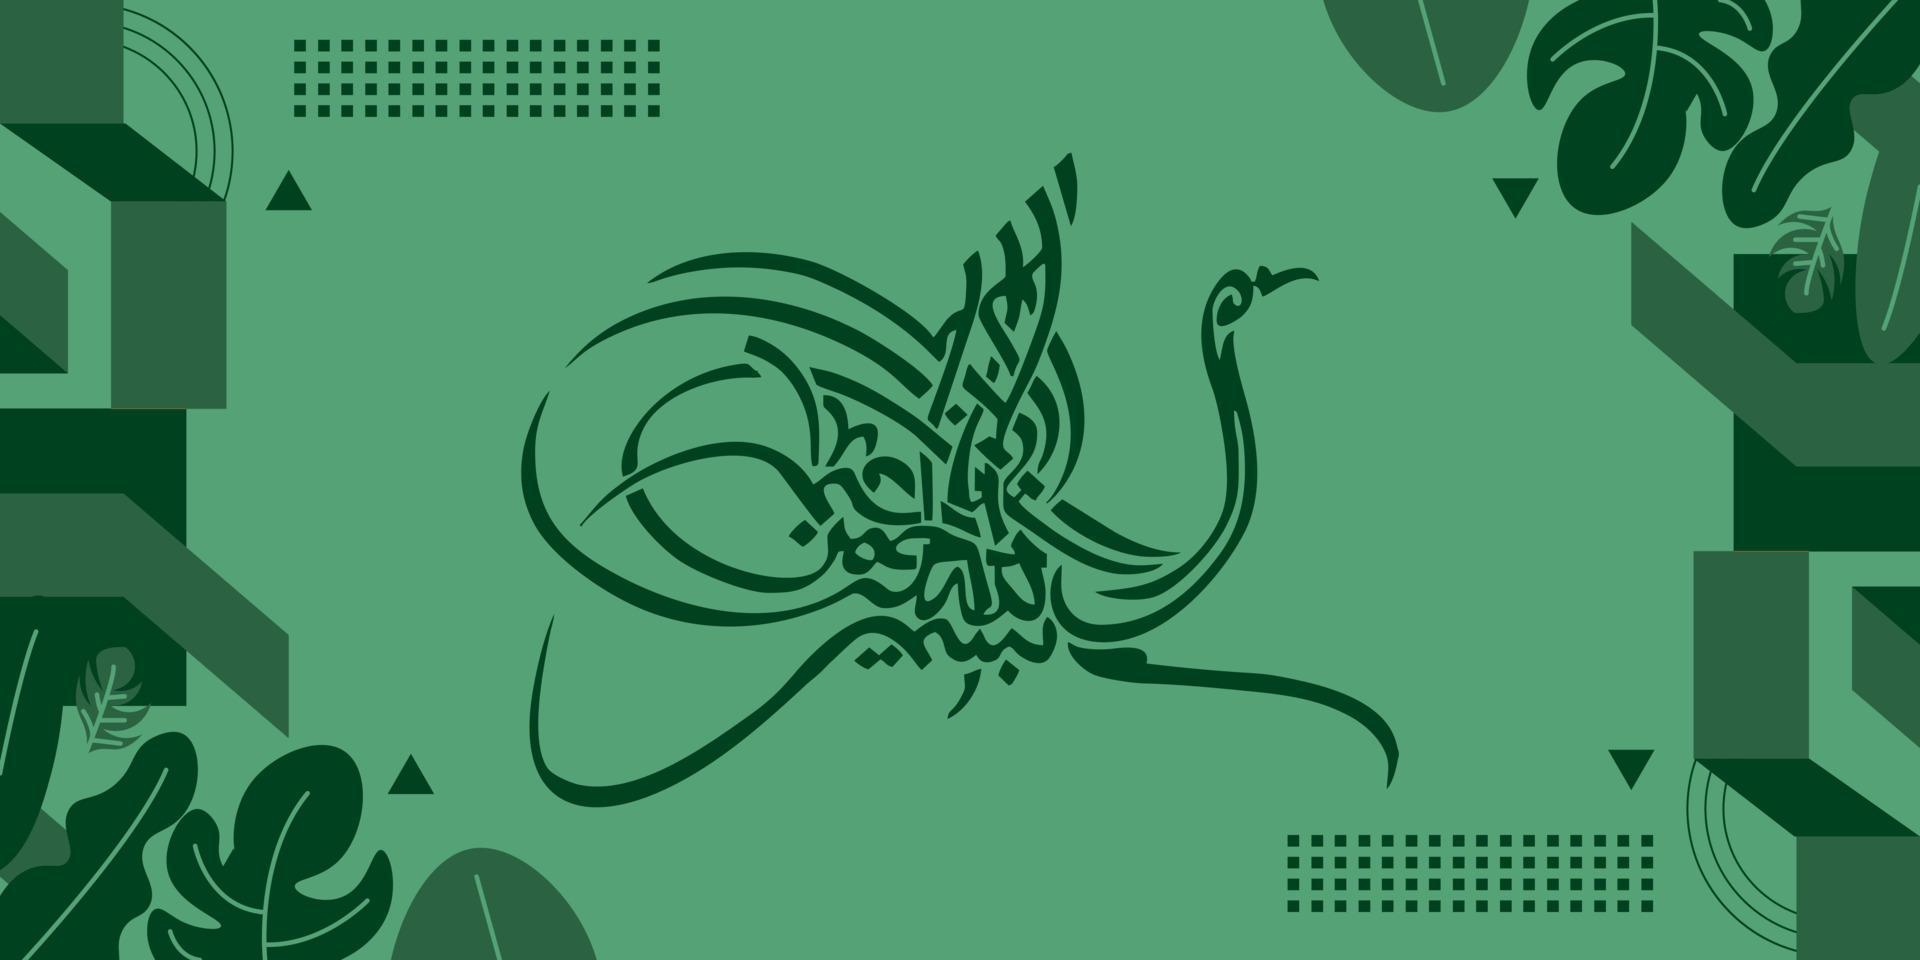 vecteur illustration de arabe calligraphie sur vert Contexte